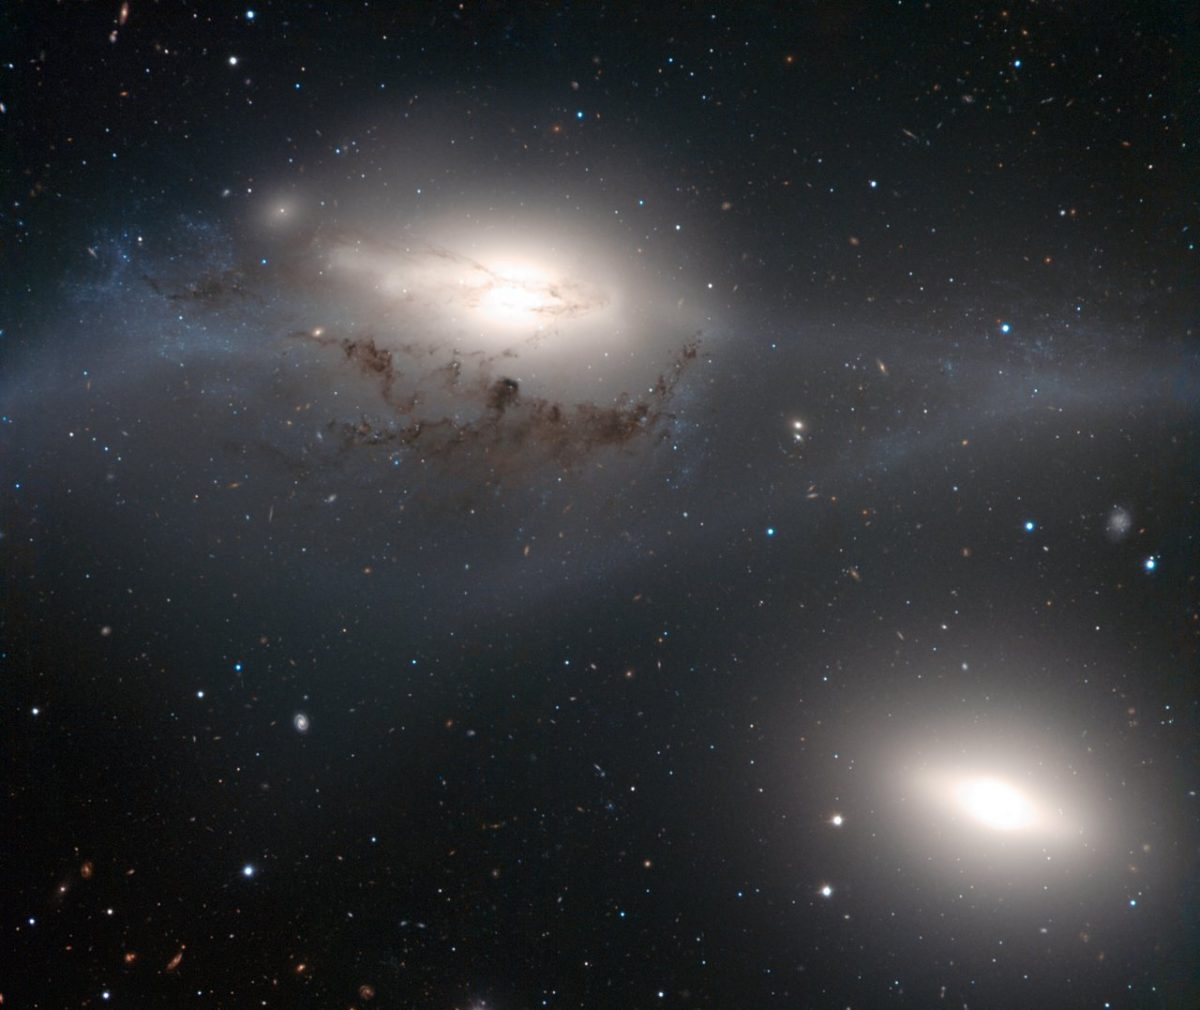 「おとめ座銀河団」の高密度領域にある銀河の眼